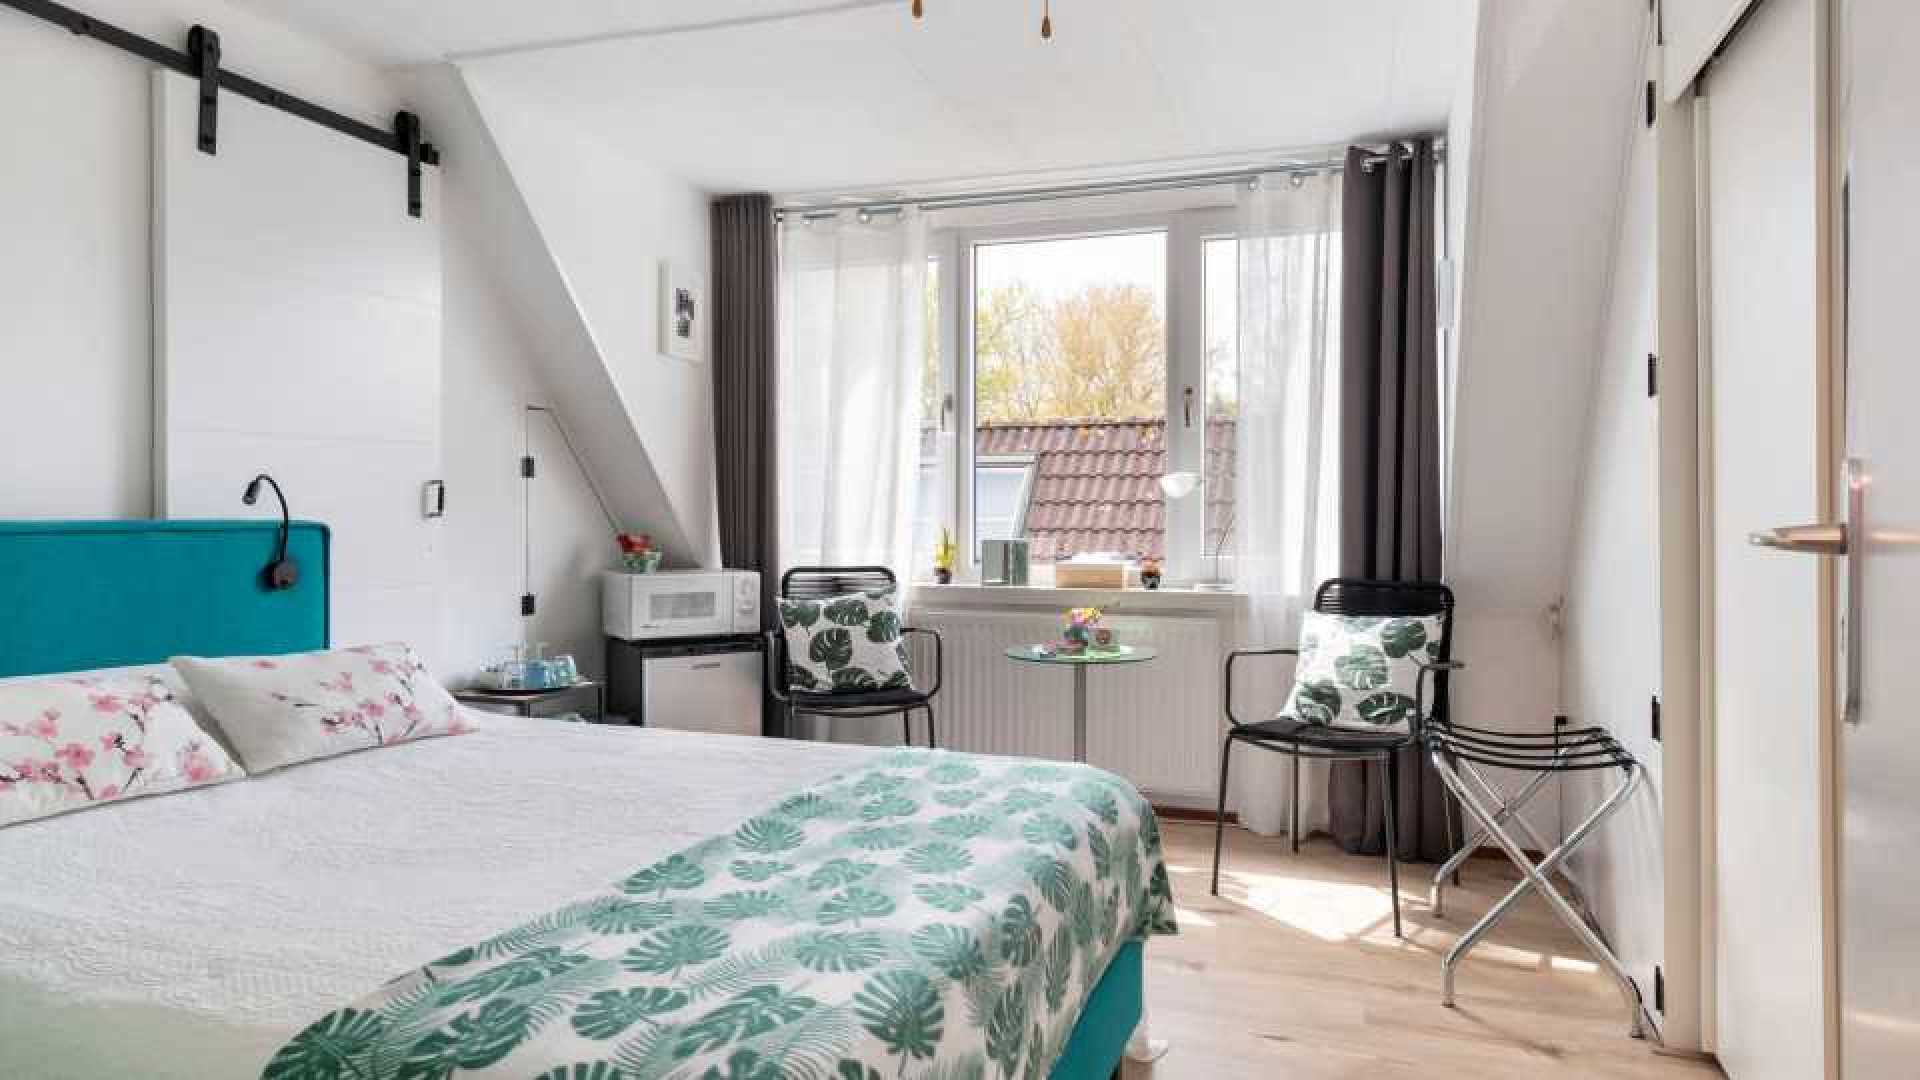 RTL Boulevard presentator Rob Goossens koopt Bed and Breakfast villa in Monninckendam. Zie foto's